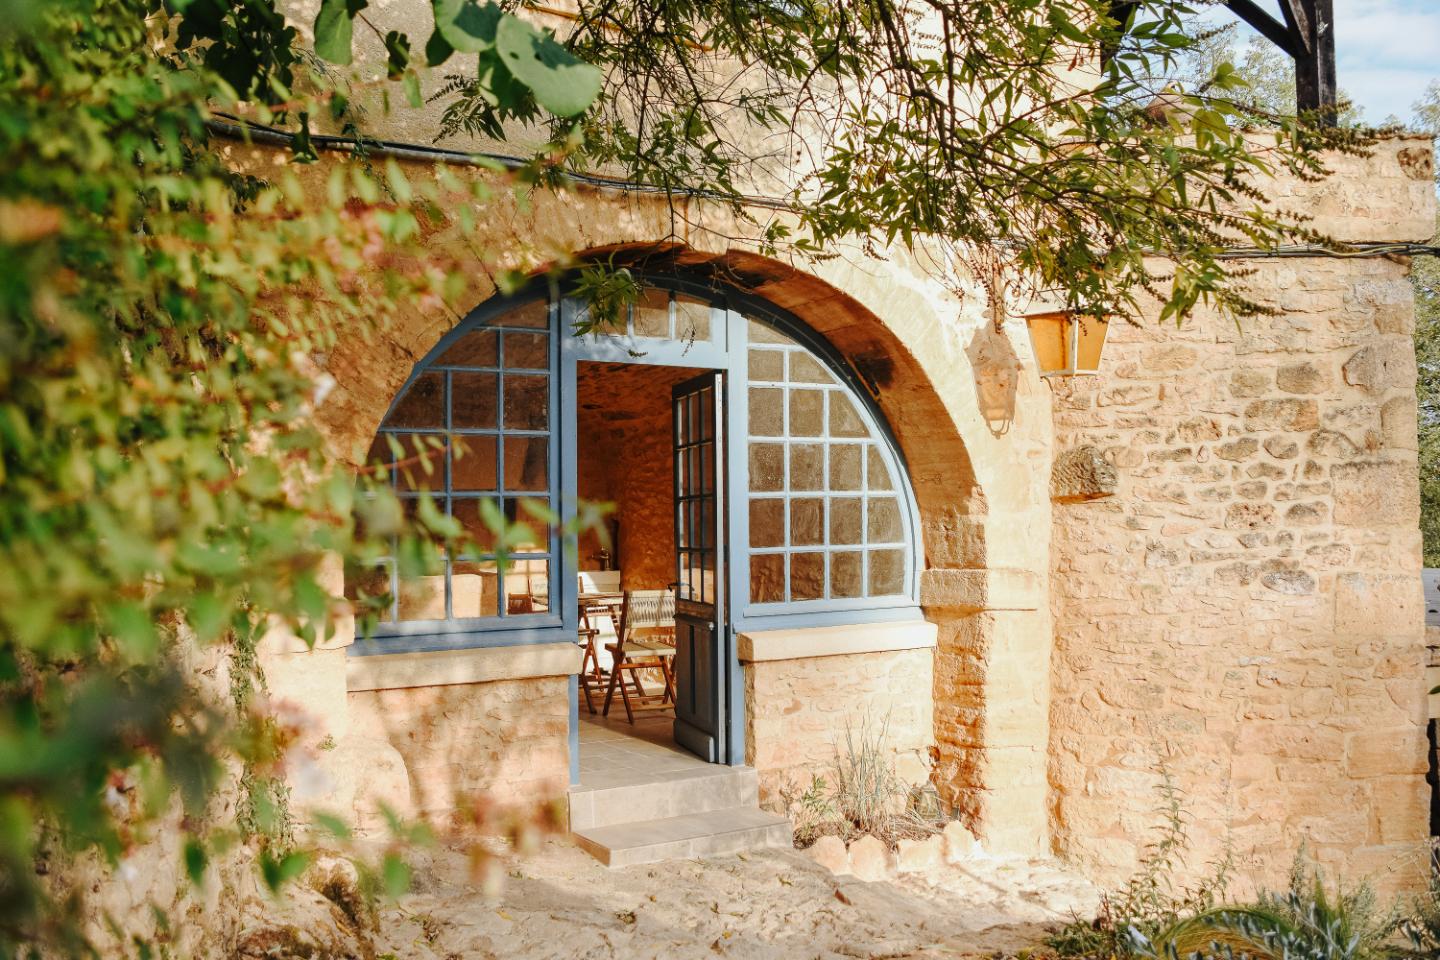 Hôte GreenGo: MAISON CISTUS - Maison d'hôtes de charme - Suites et gîte avec terrasses privées - Proche de Sarlat - Image 7